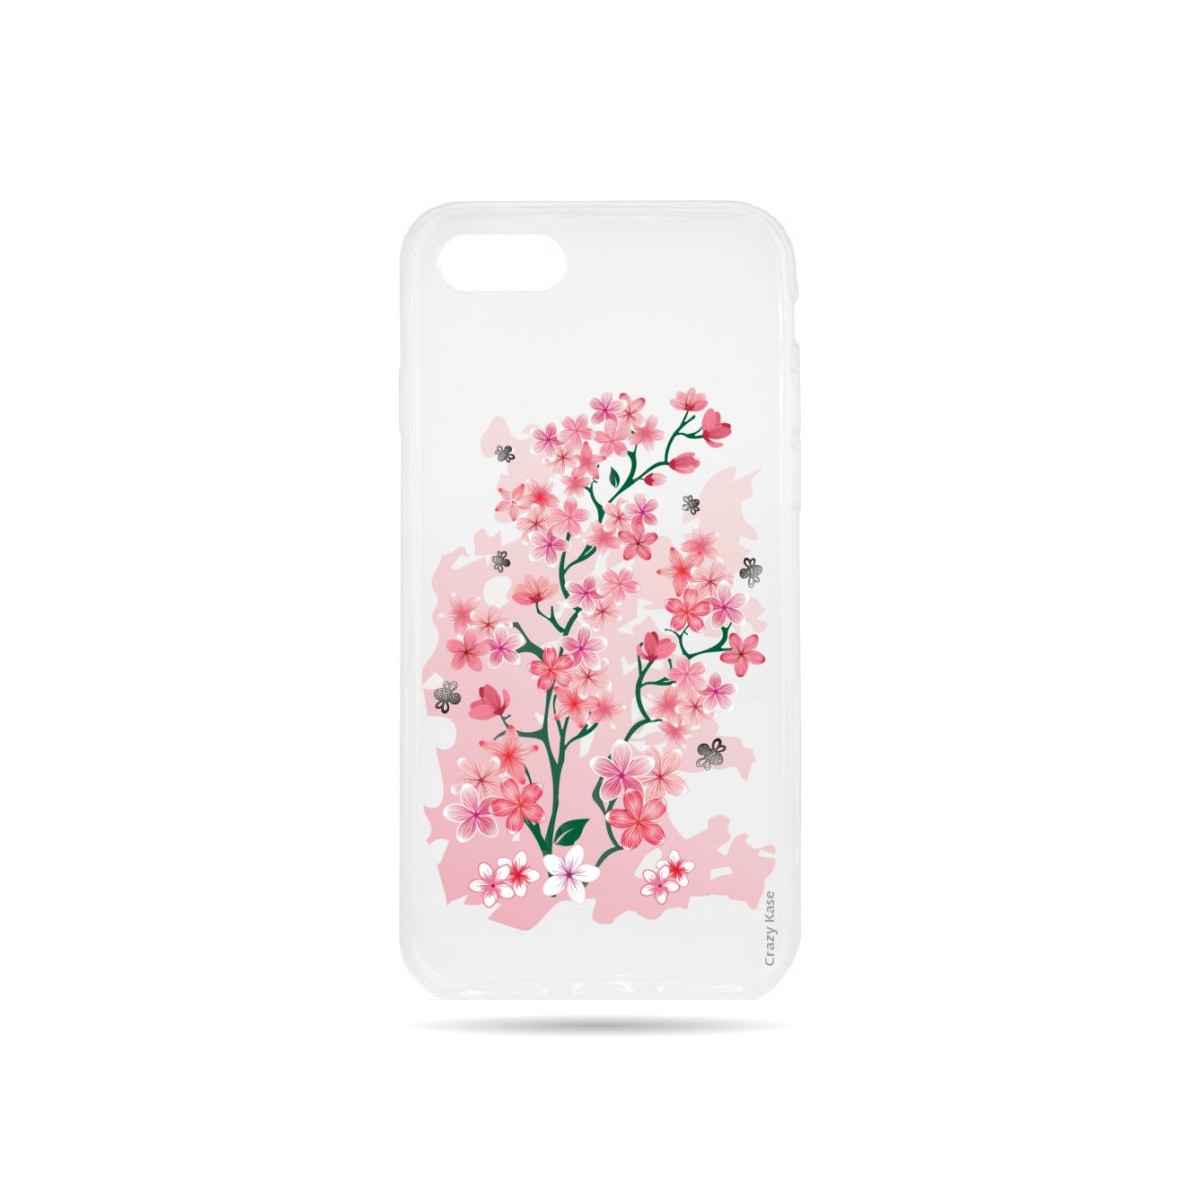 Coque iPhone 7 Transparente souple motif Fleurs de Cerisier - Crazy Kase